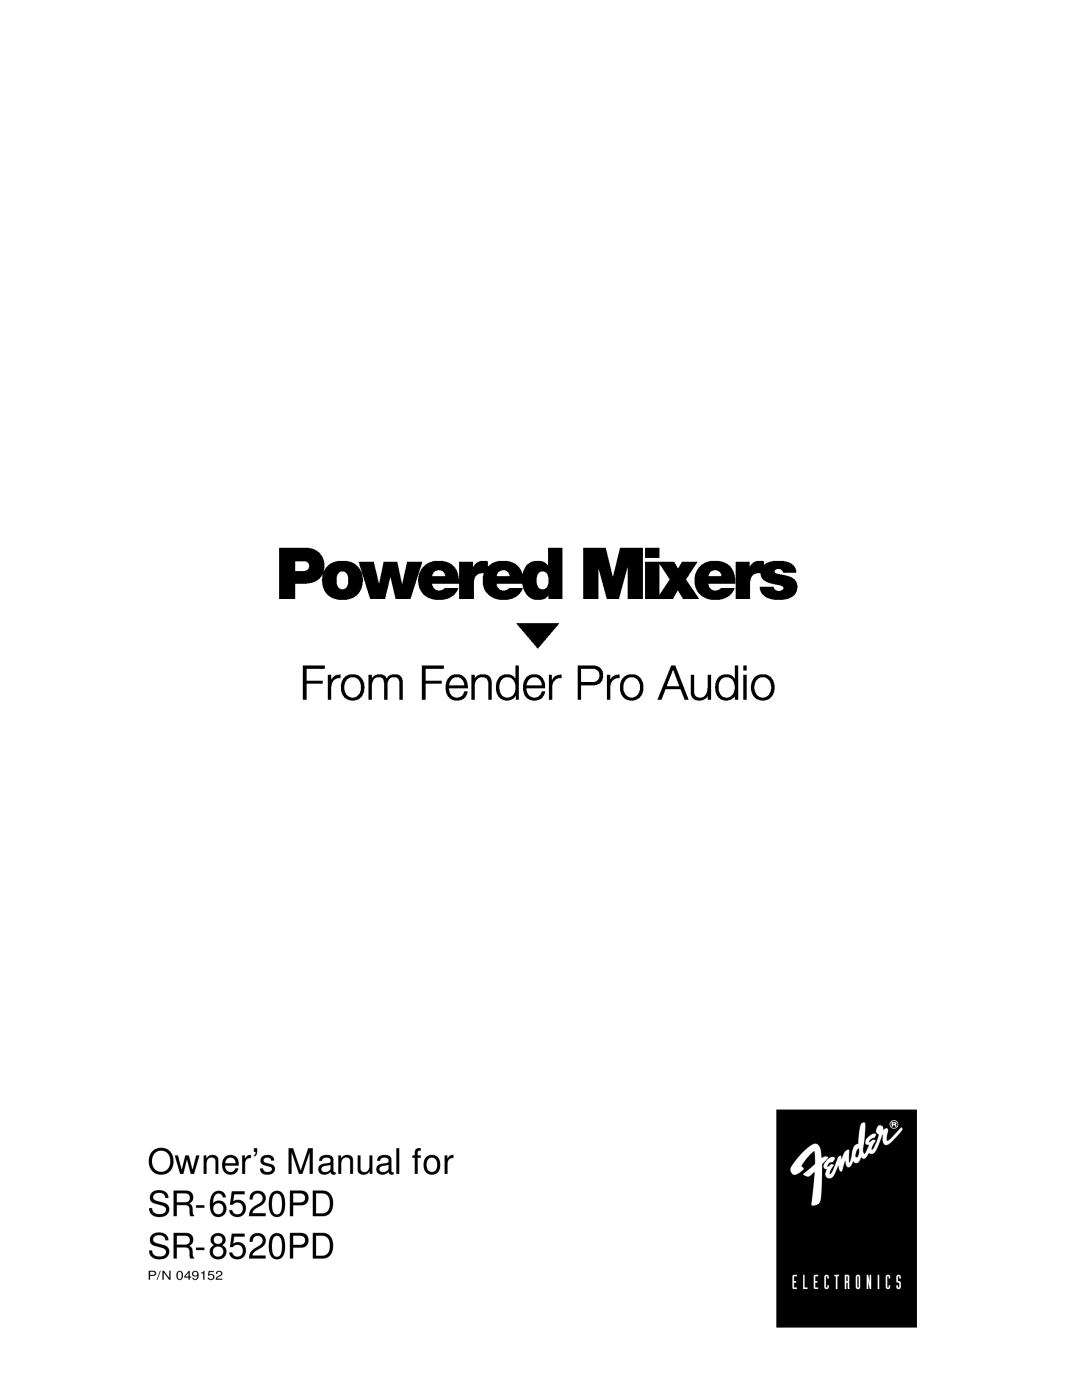 Fender owner manual Owner’s Manual for SR-6520PD SR-8520PD 